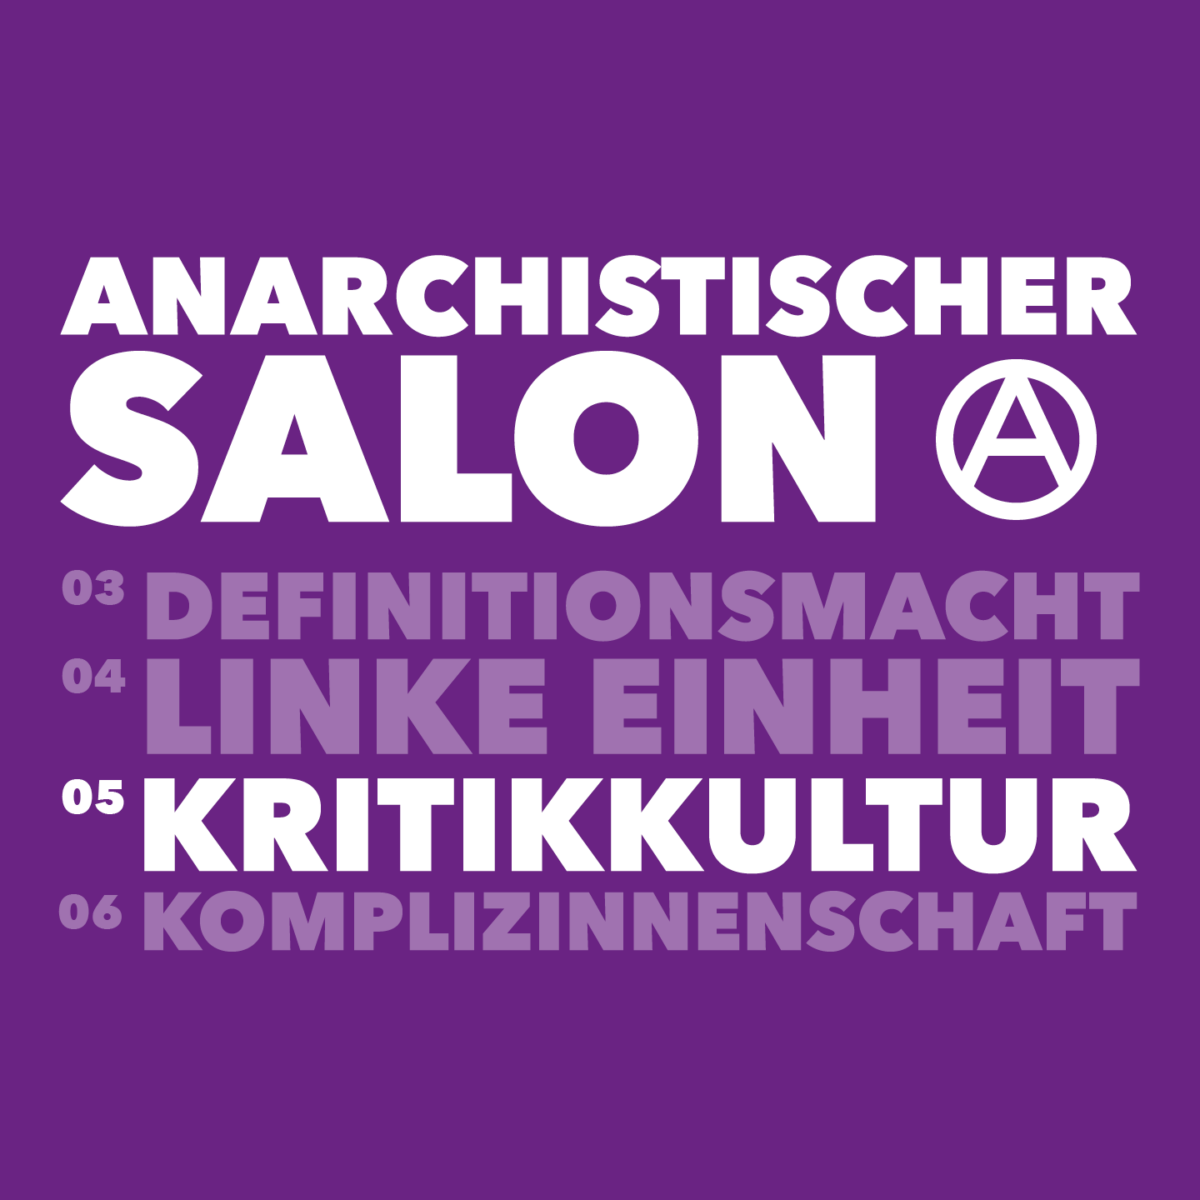 Anarchistischer Salon: Kritikkultur anarchistisch leben